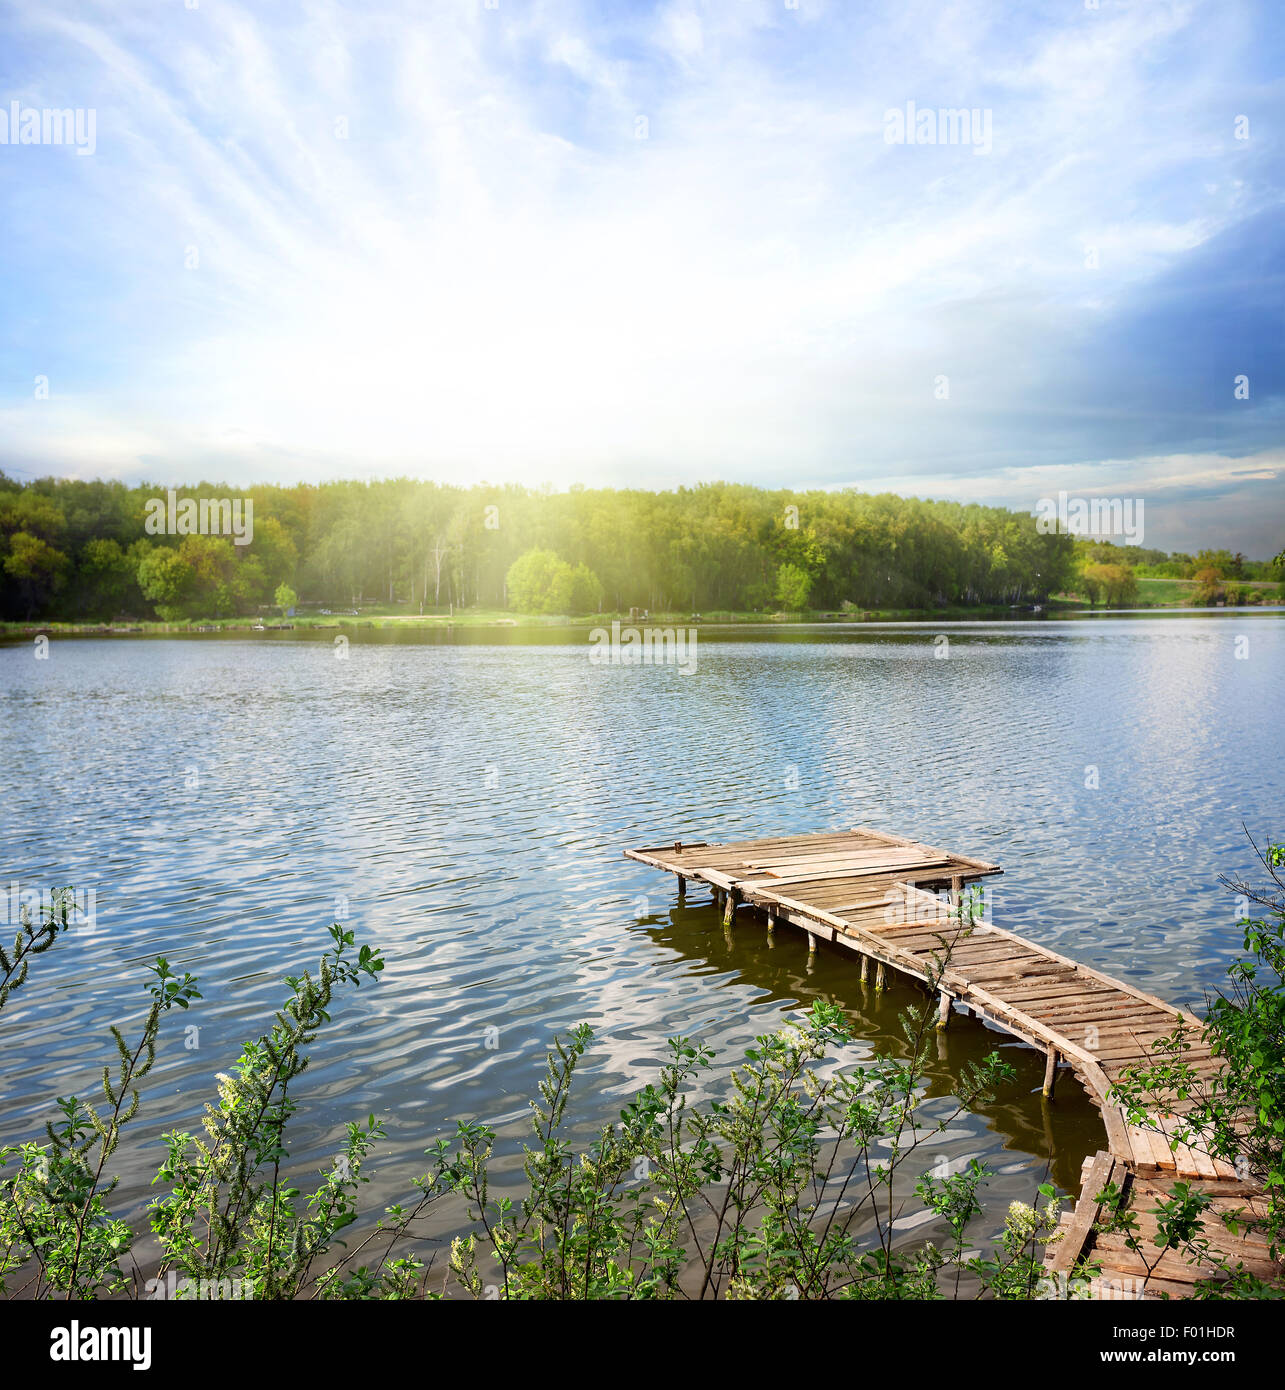 Il molo di legno sul lago sotto cieli soleggiati Foto Stock